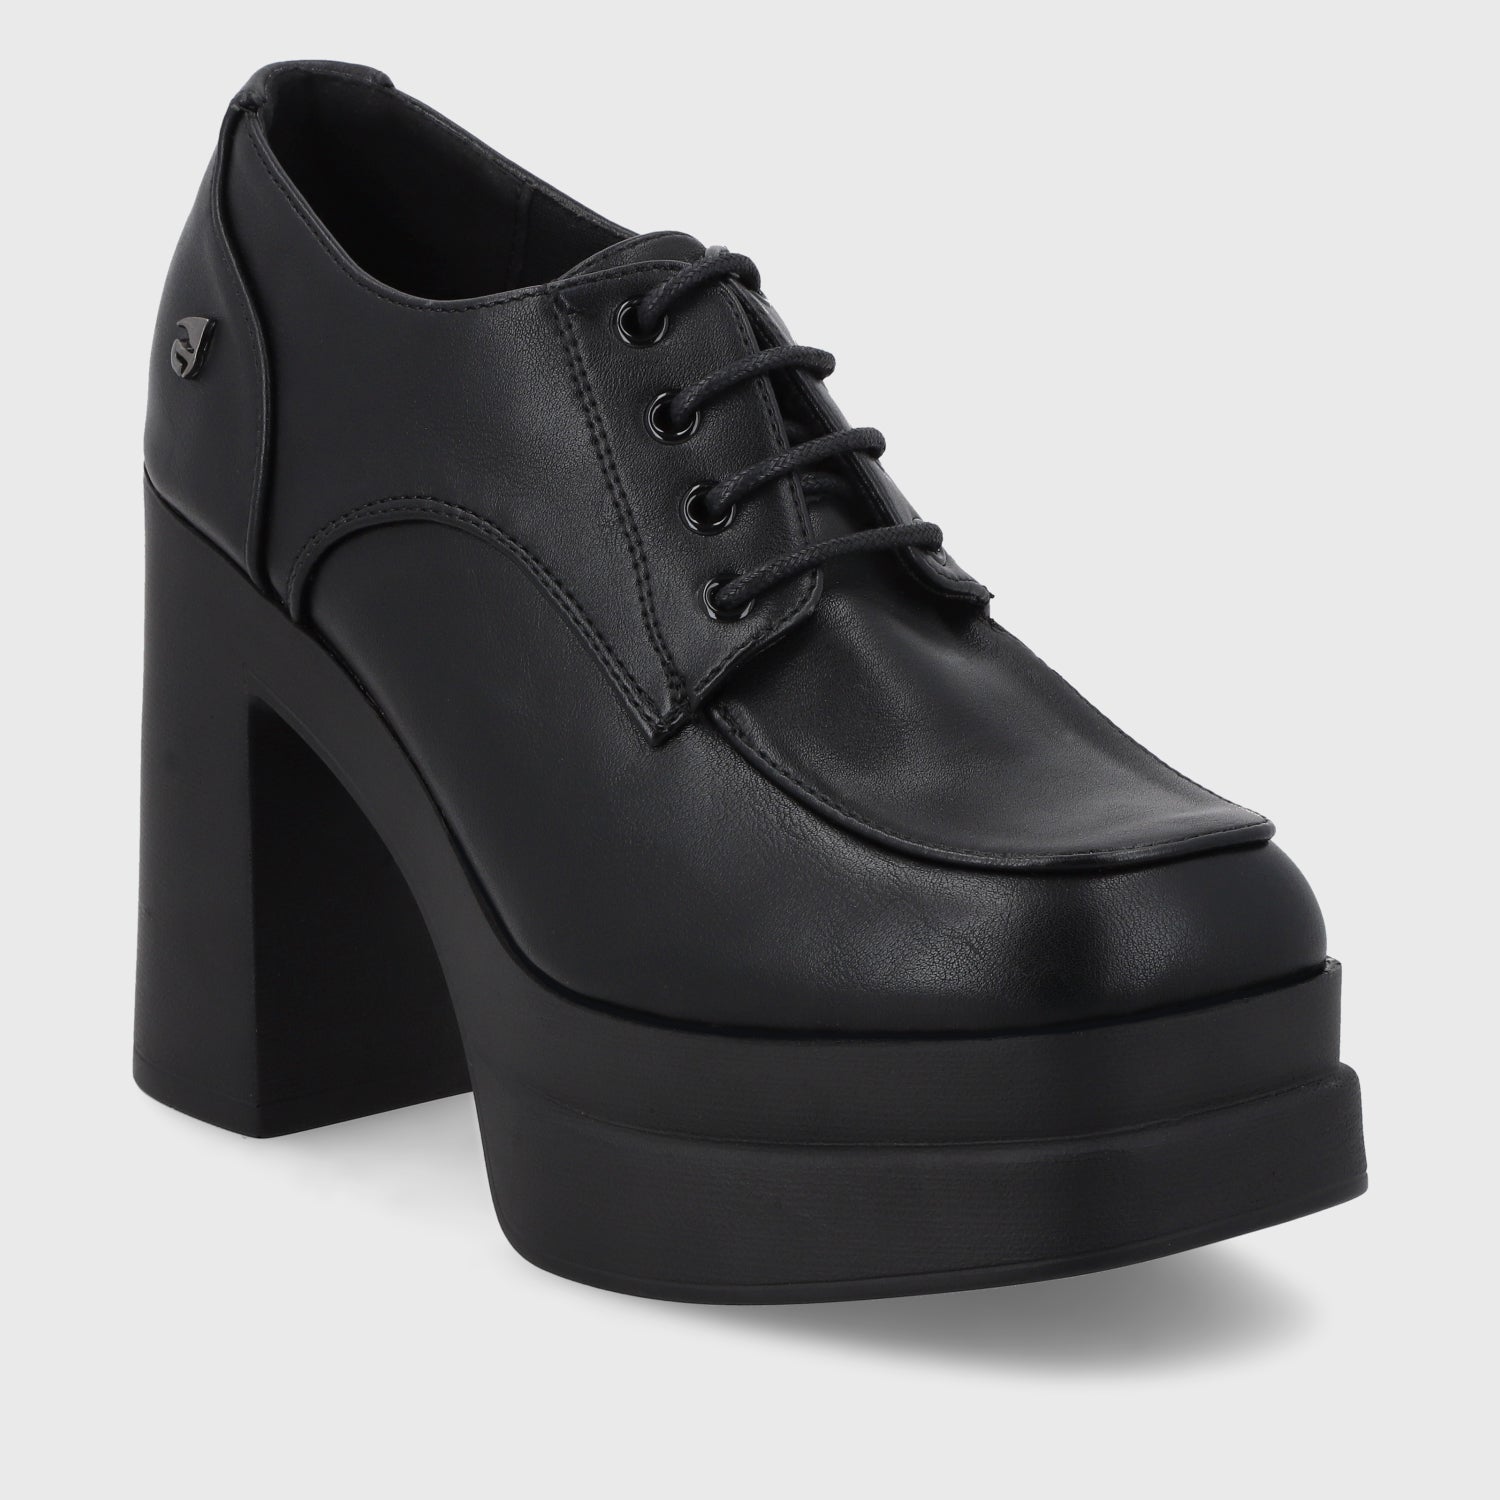 Zapato Negro Mujer 35604 - Gotta Perú